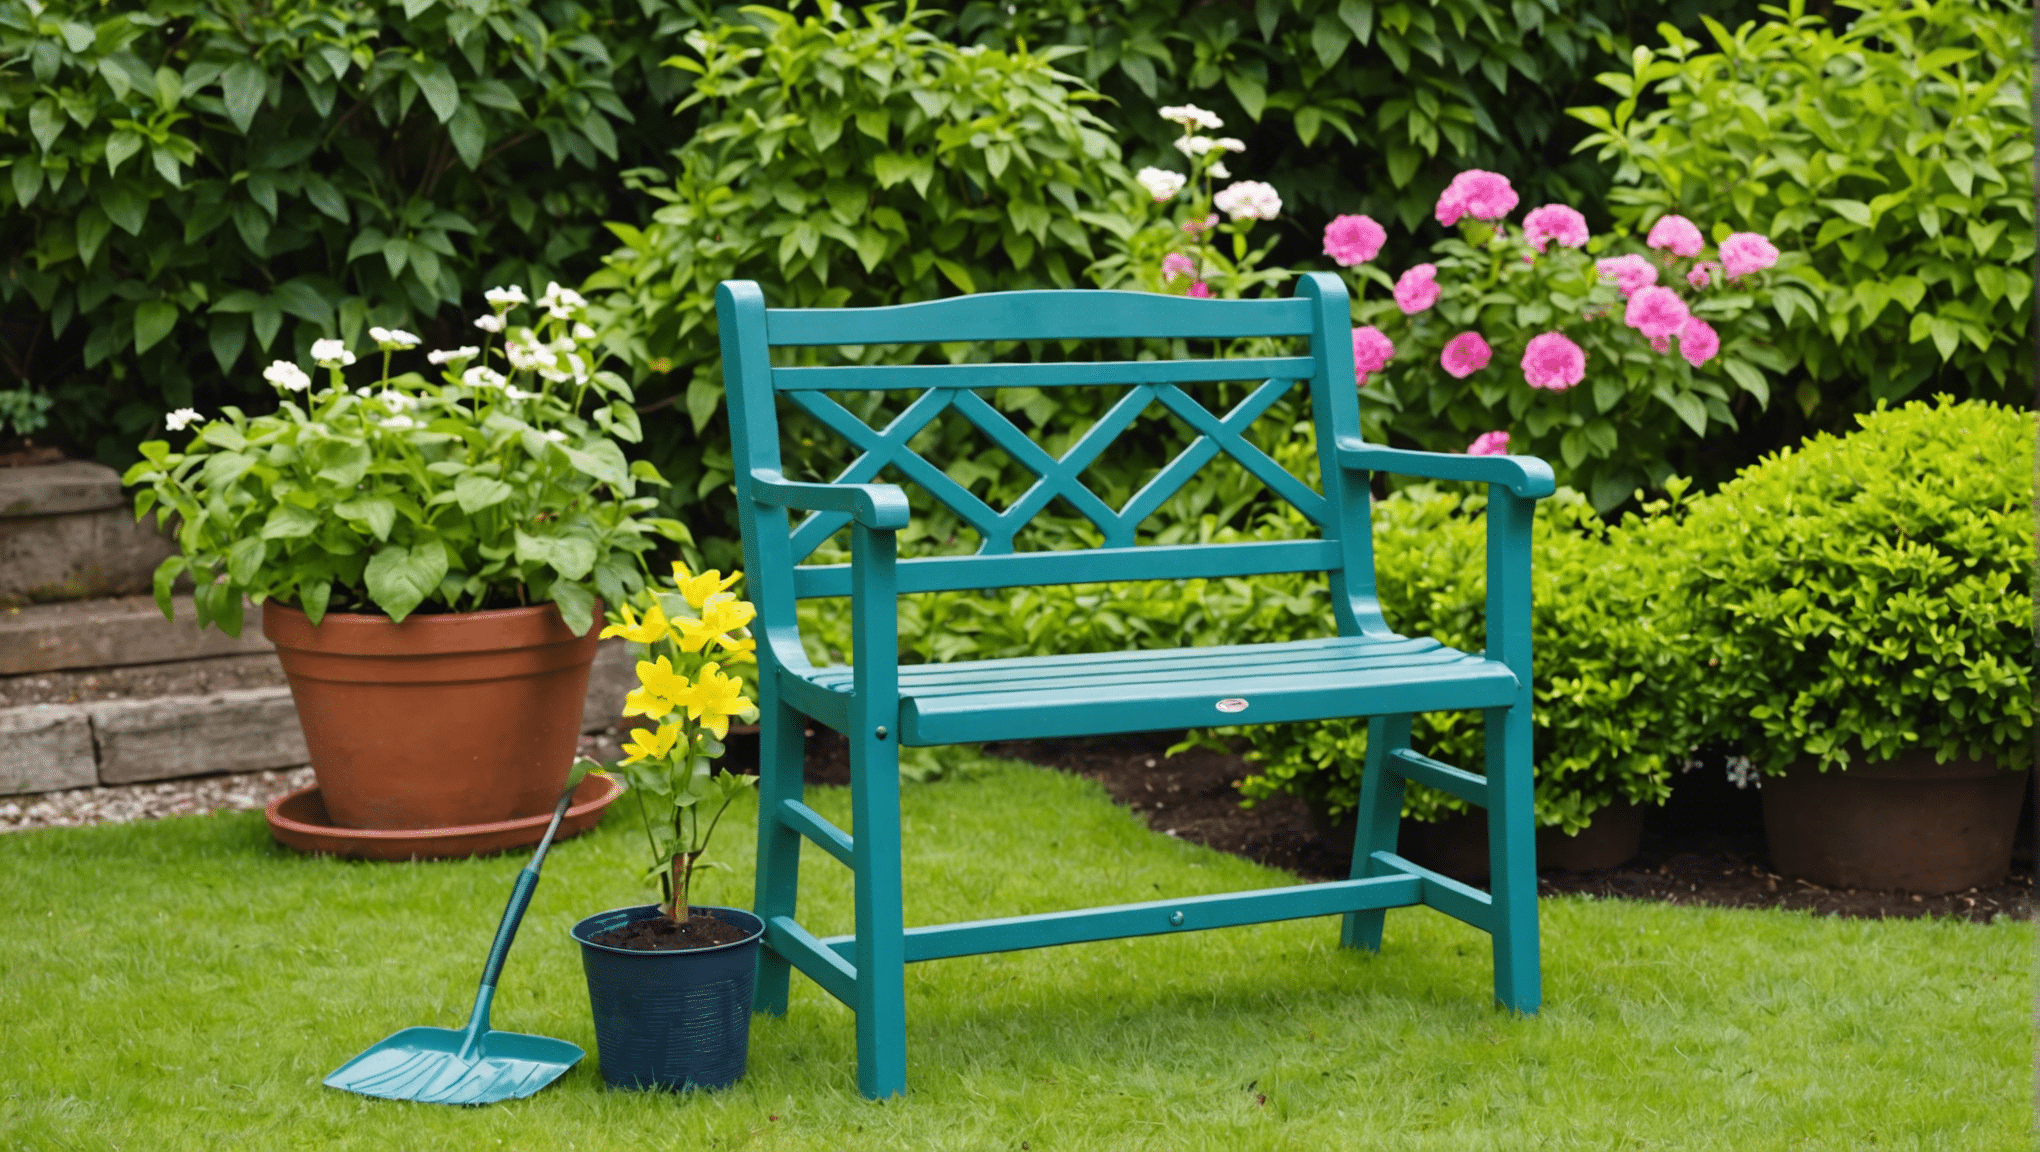 Entdecken Sie die Vorteile eines Gartensitzes und wie er Ihr Gartenerlebnis verbessern kann. Schonen Sie Ihren Rücken und Ihre Knie, während Sie Ihre Zeit im Garten genießen!